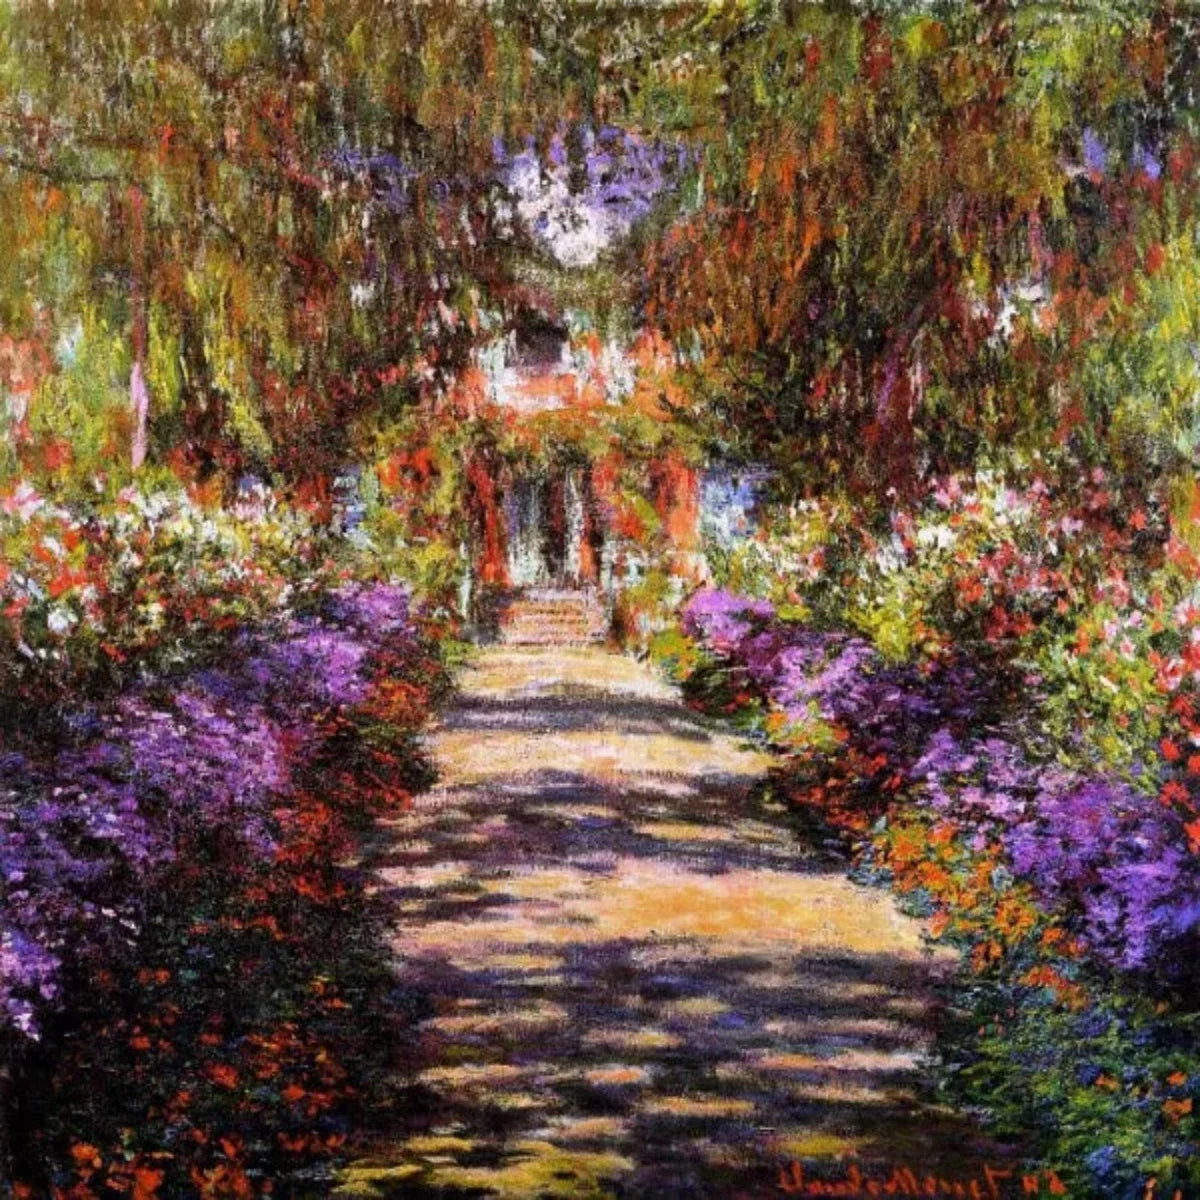 Pad in Monets Garden in Giverny- Vintage wandkunstafdrukken decoratie voor de woonkamer